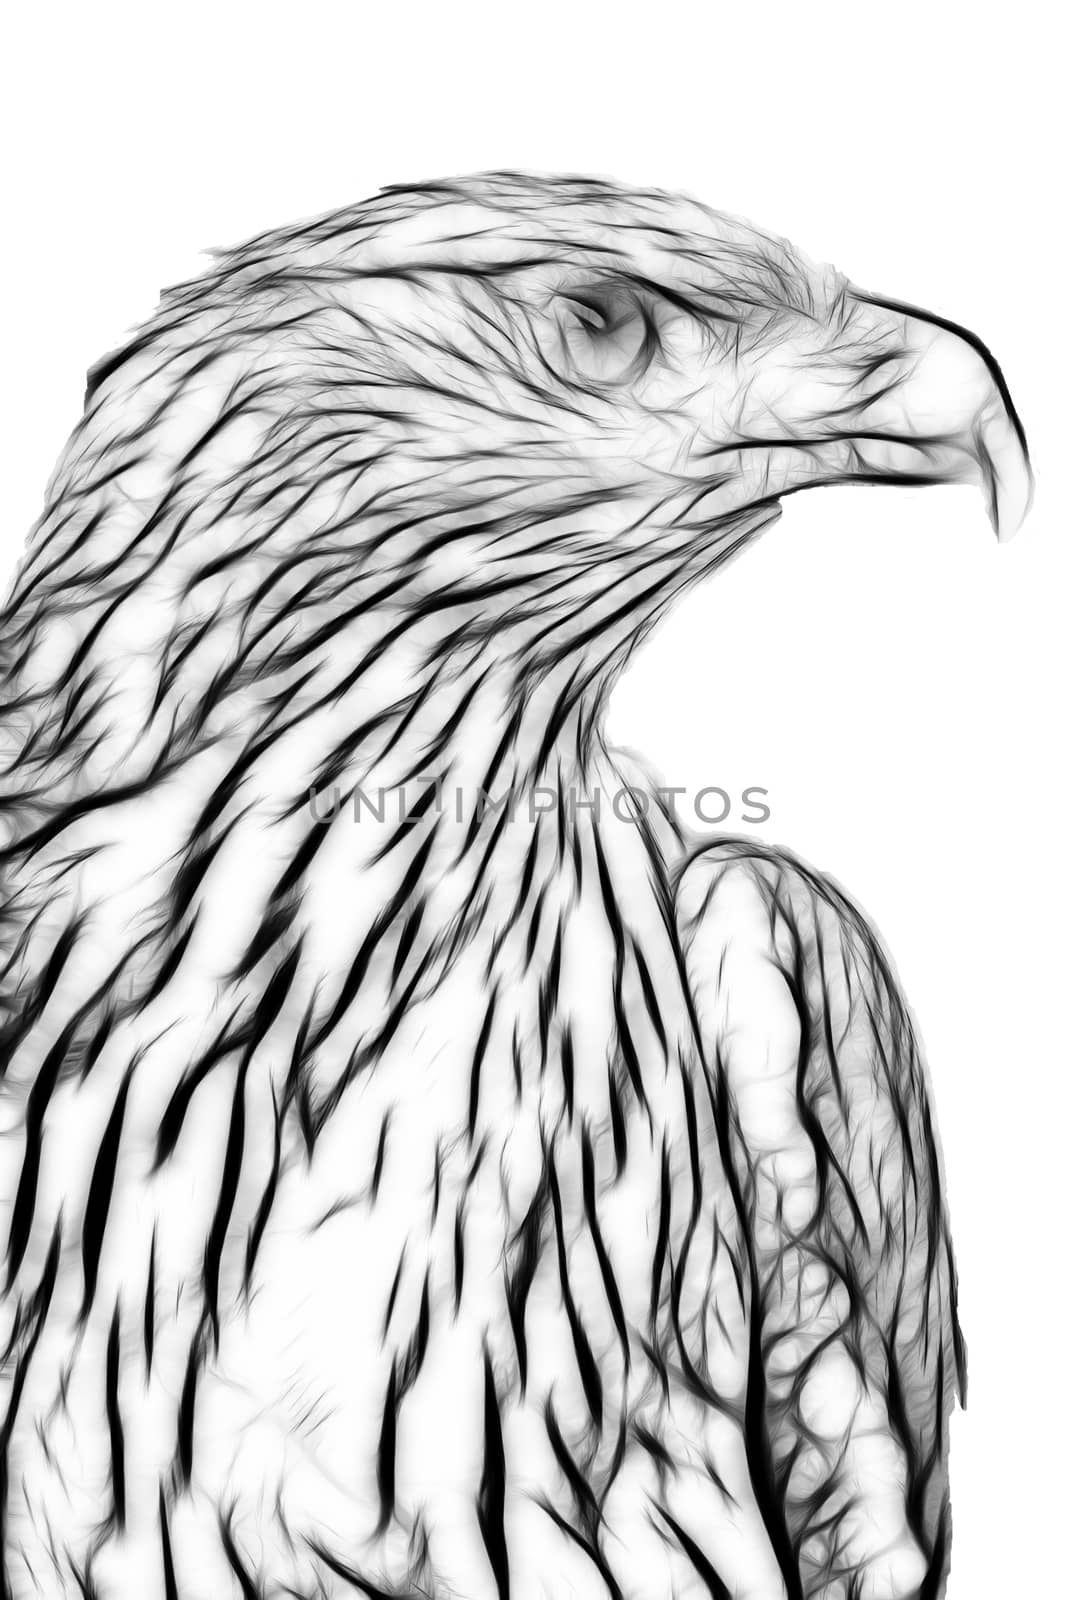  drawing of eagle by gandolfocannatella